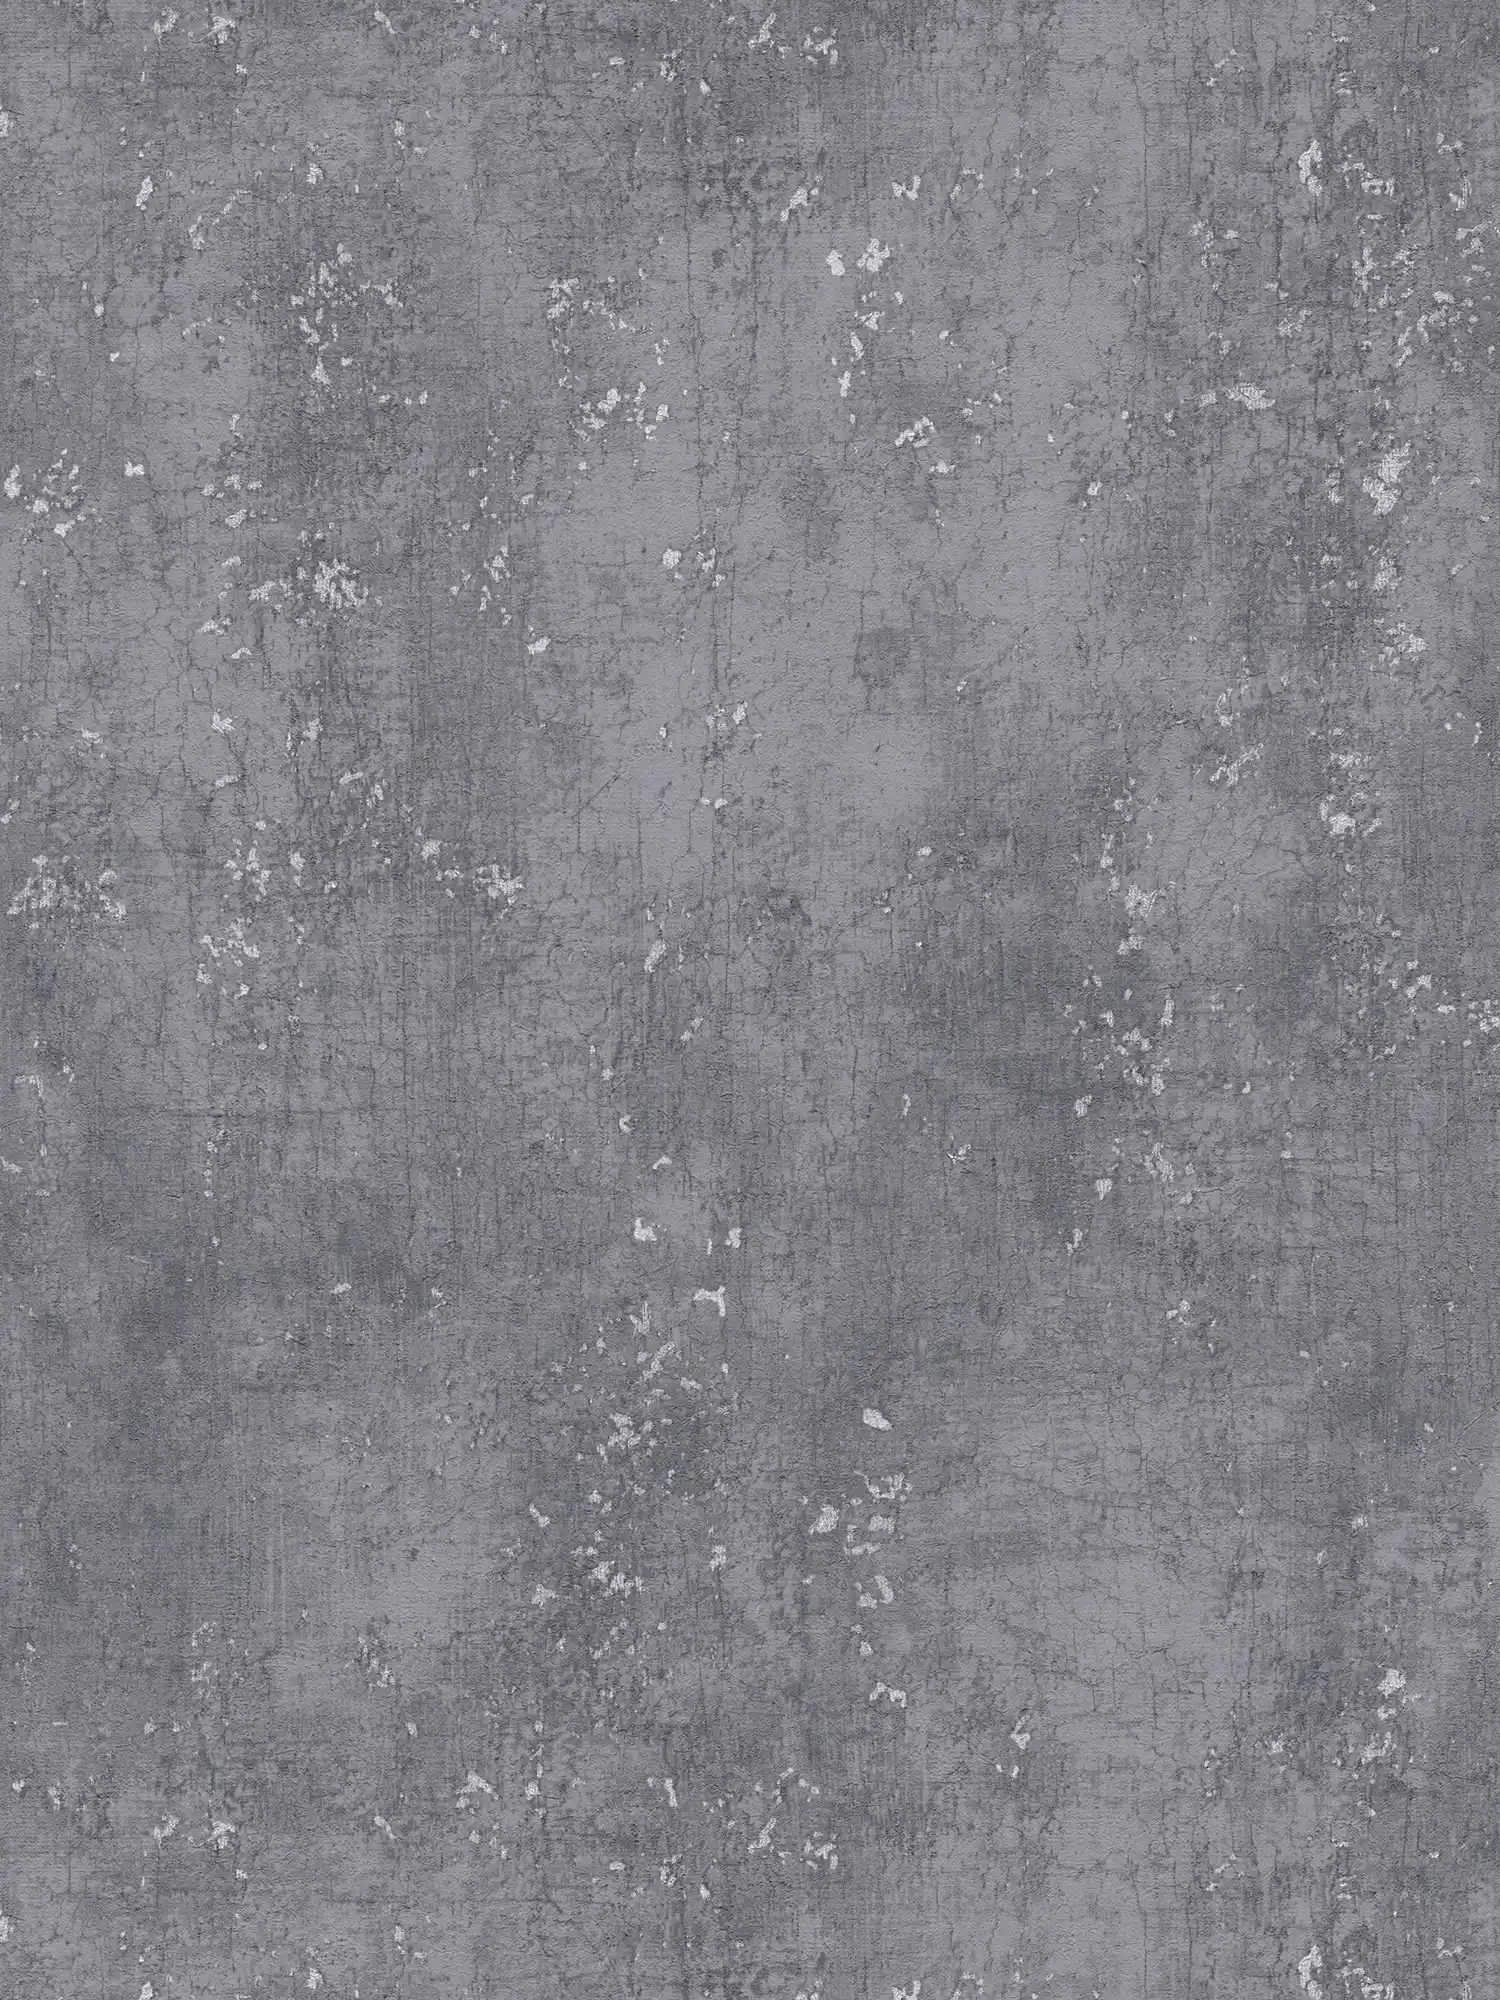             Carta da parati grigio scuro con effetto intonaco Udes - grigio, metallizzato
        